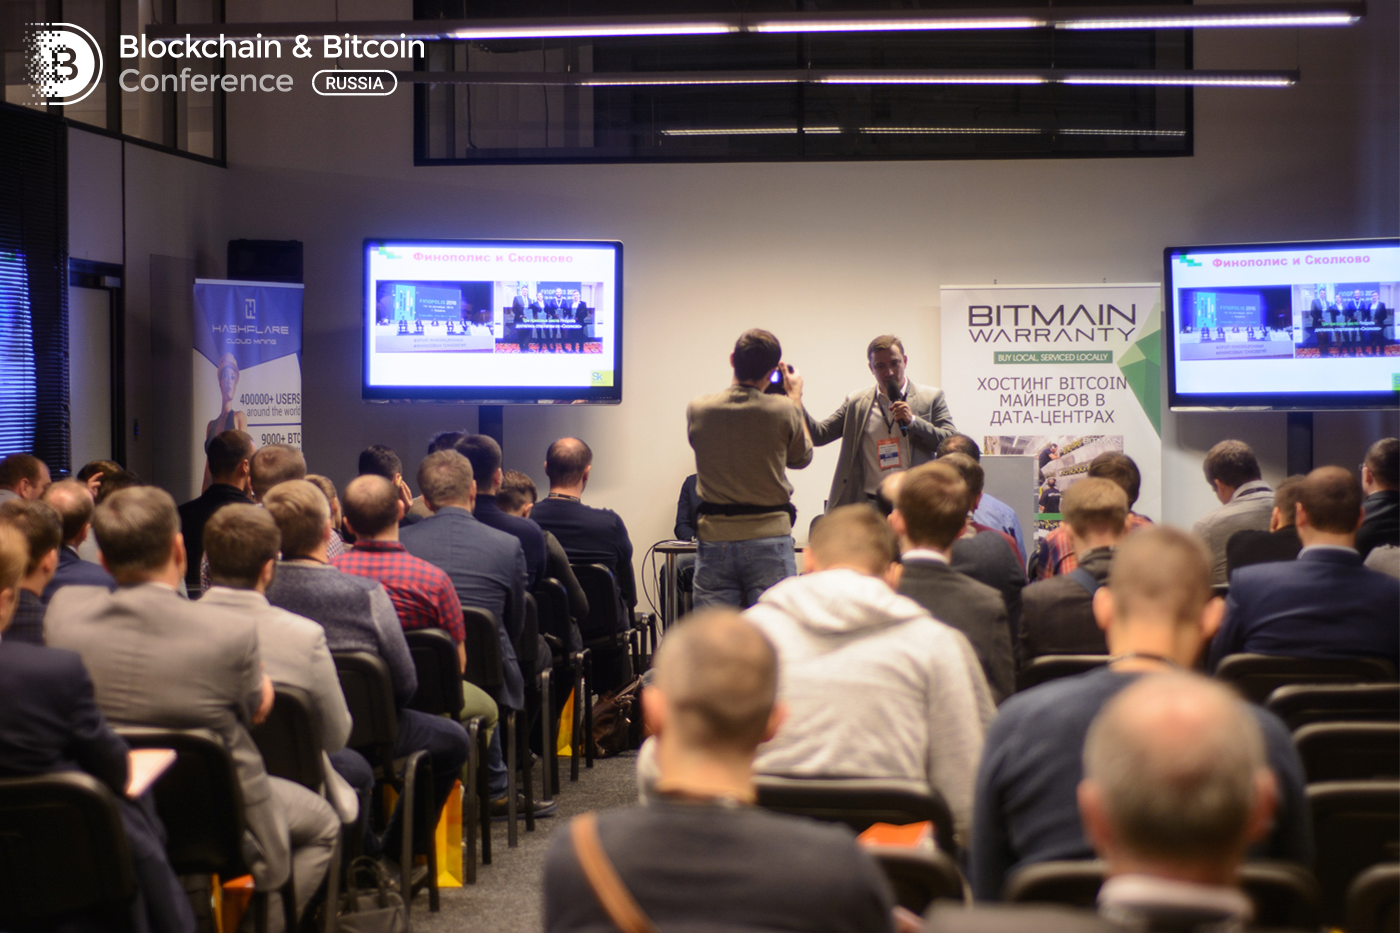 Блокчейн-разработчики встретились с представителем Госдумы. В Москве прошла ежегодная Blockchain & Bitcoin Conference